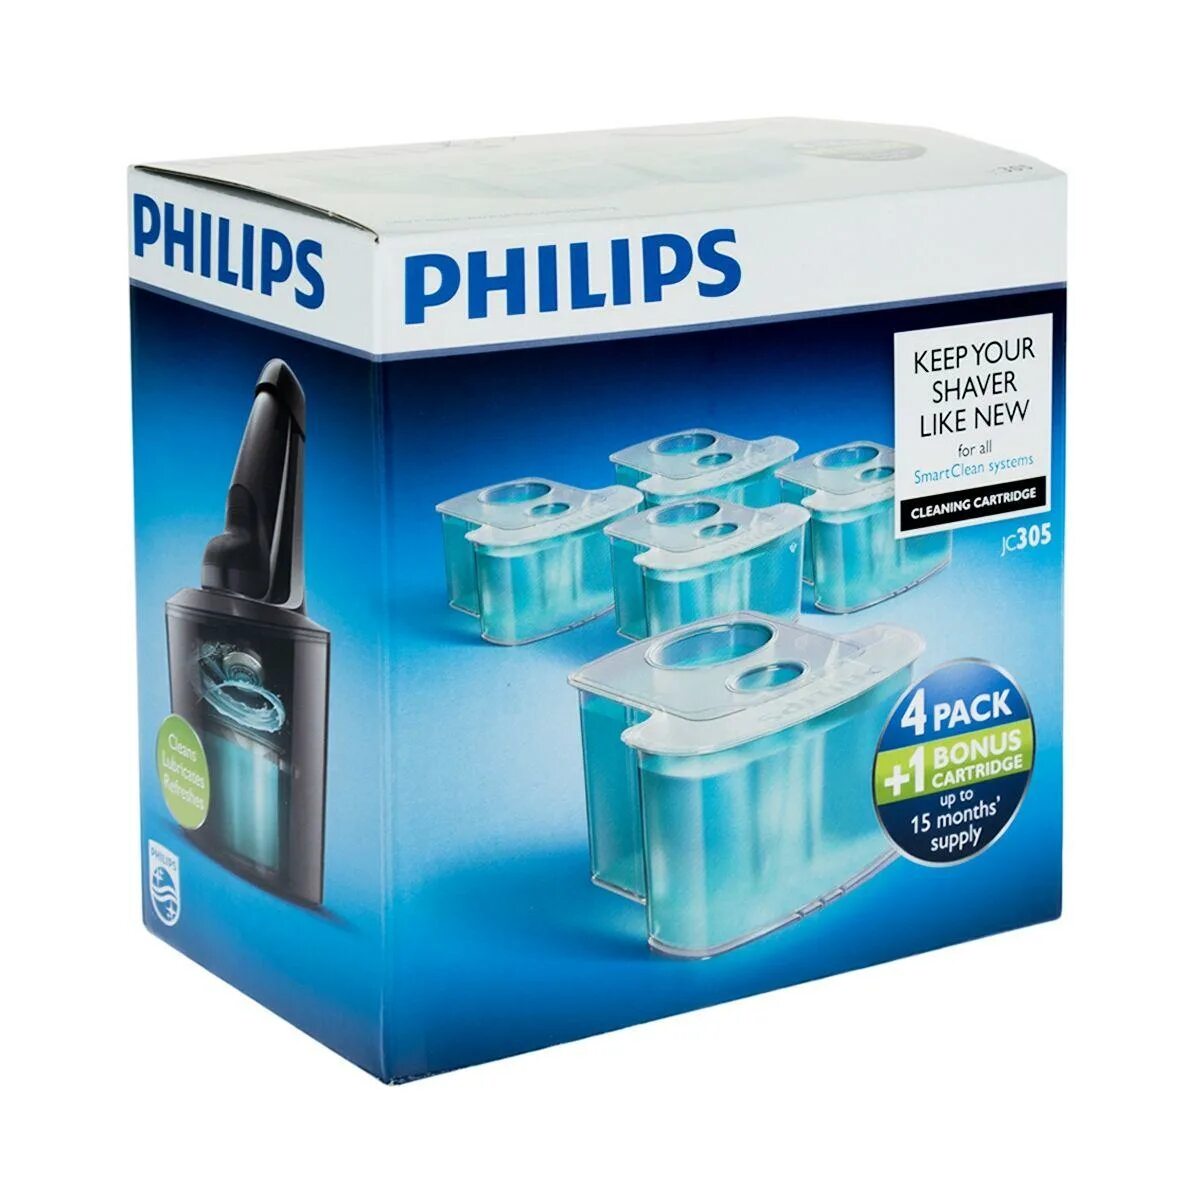 Картридж Philips jc305. Картридж смарт Клин для бритвы Филипс. Philips картридж для бритвы cc12. Картридж для бритвы Филипс 5000.